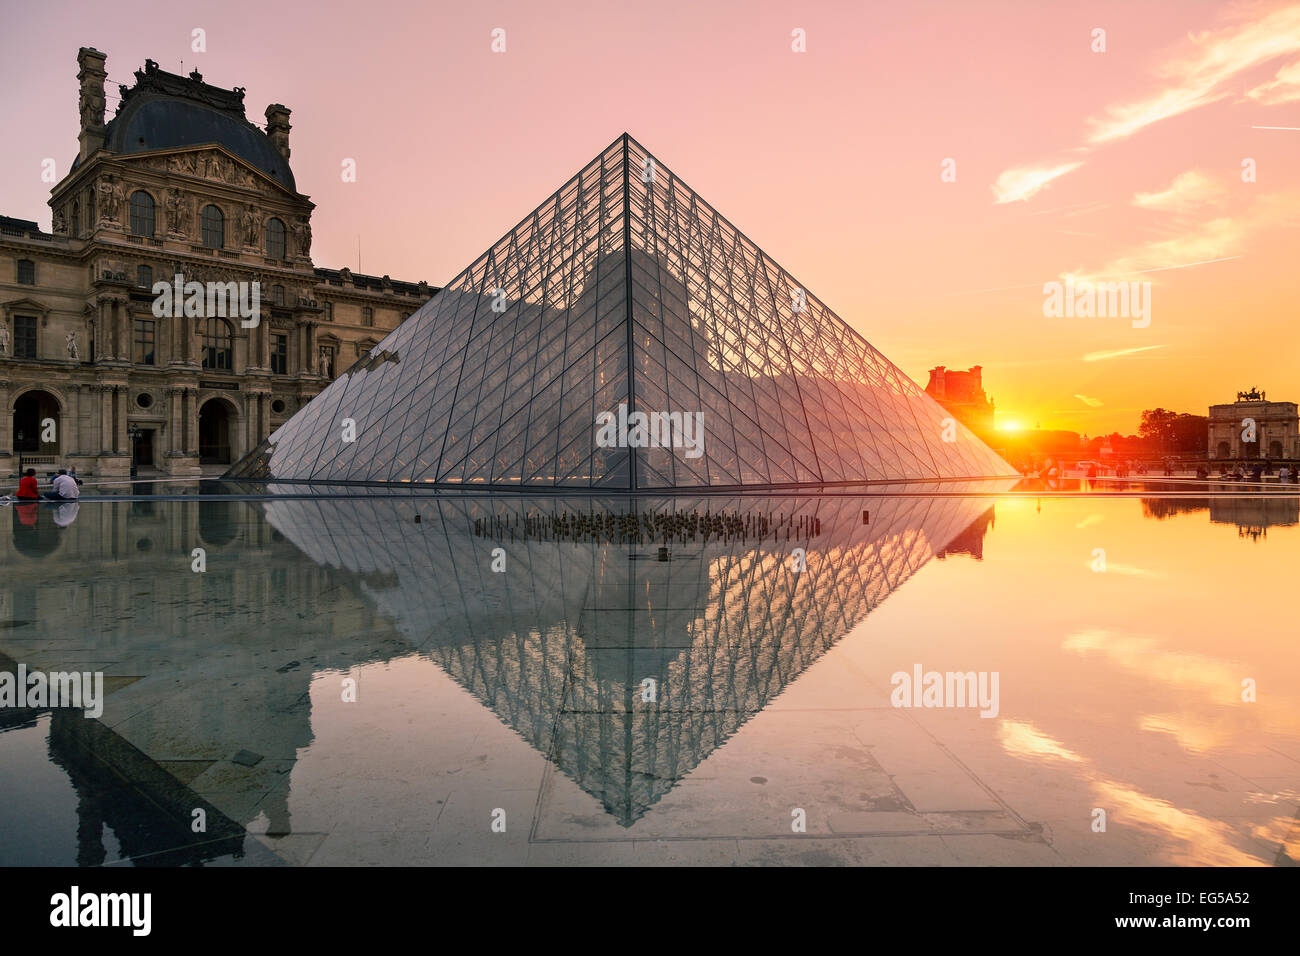 Paris, Louvre pyramid at sunset Stock Photo